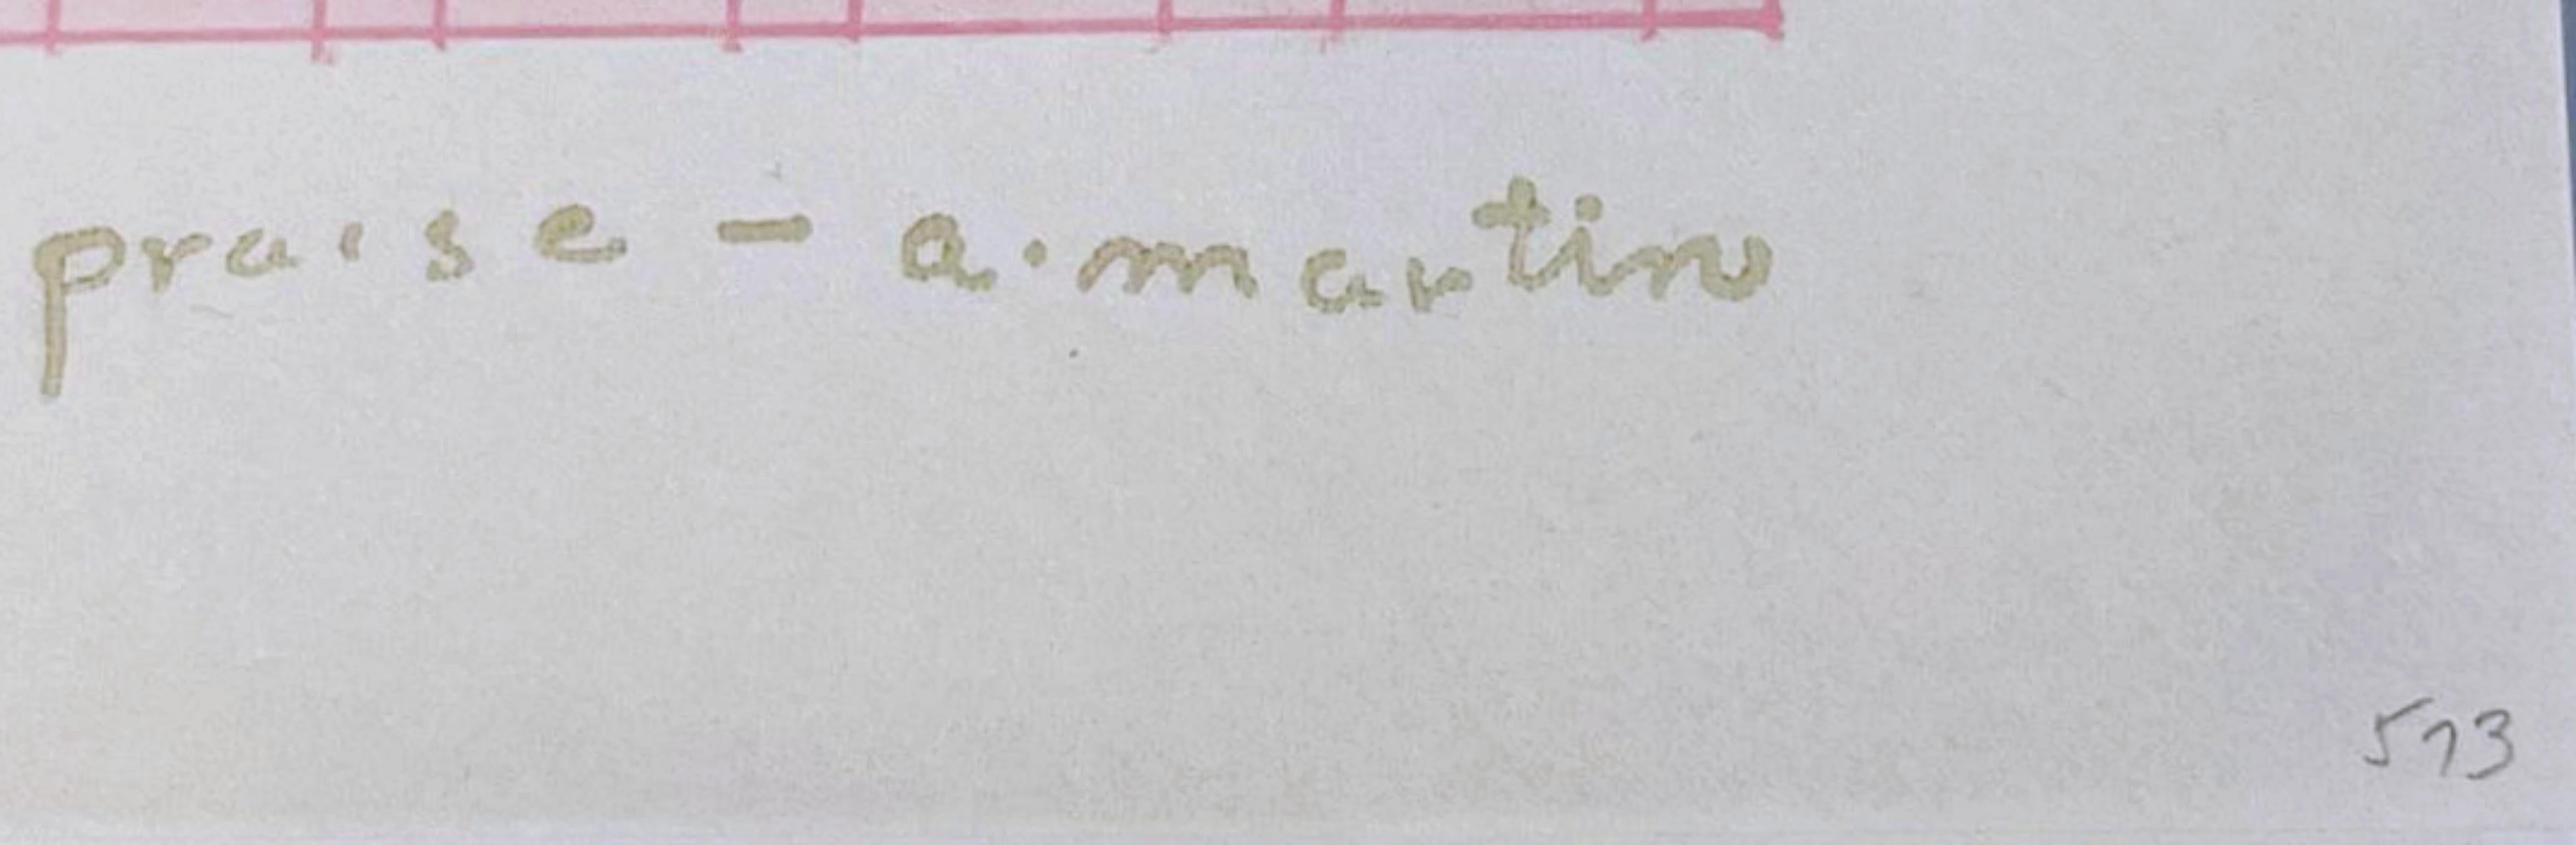 AGNES MARTIN
Lob, 1976
Lithographie auf Dalton Natural Bond Papier. Goldgeprägte Signatur auf der Vorderseite
Nummeriert 593 in Bleistift auf der Vorderseite, aus der limitierten Auflage von 1000
Begleitet von dem Originalumschlag (siehe Foto)
11 ×